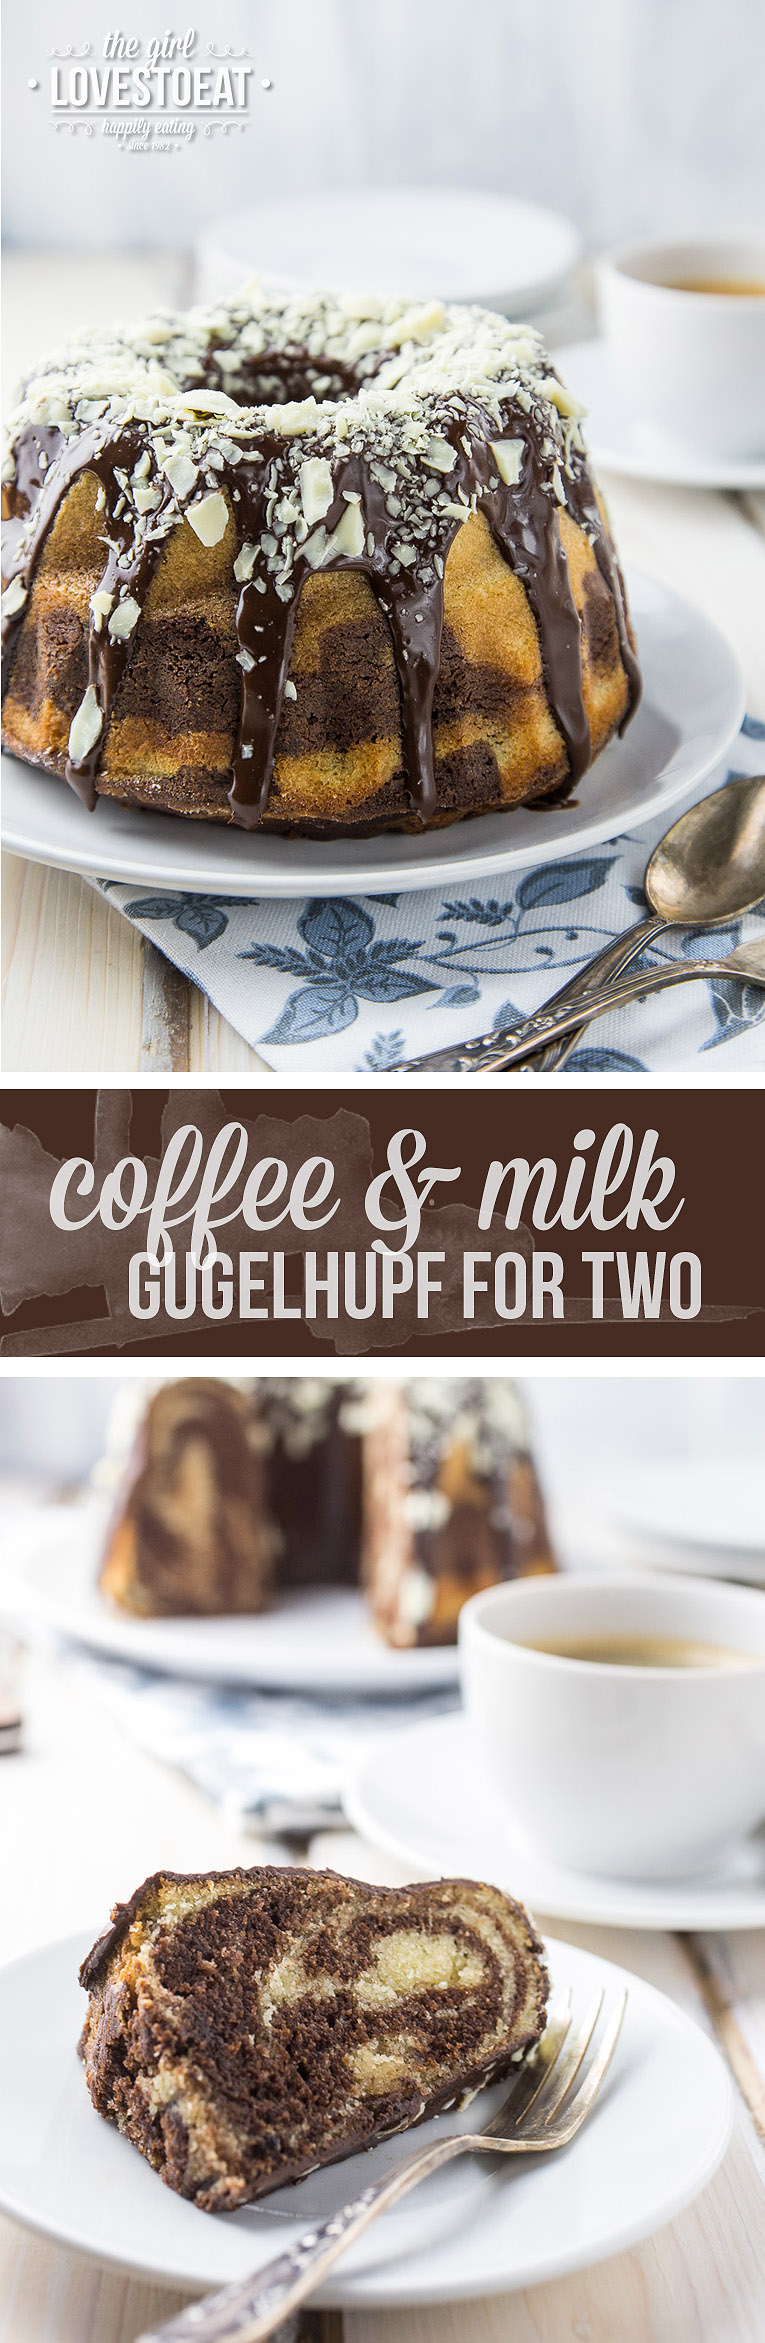 Coffee & Milk Gugelhupf { thegirllovestoeat.com }